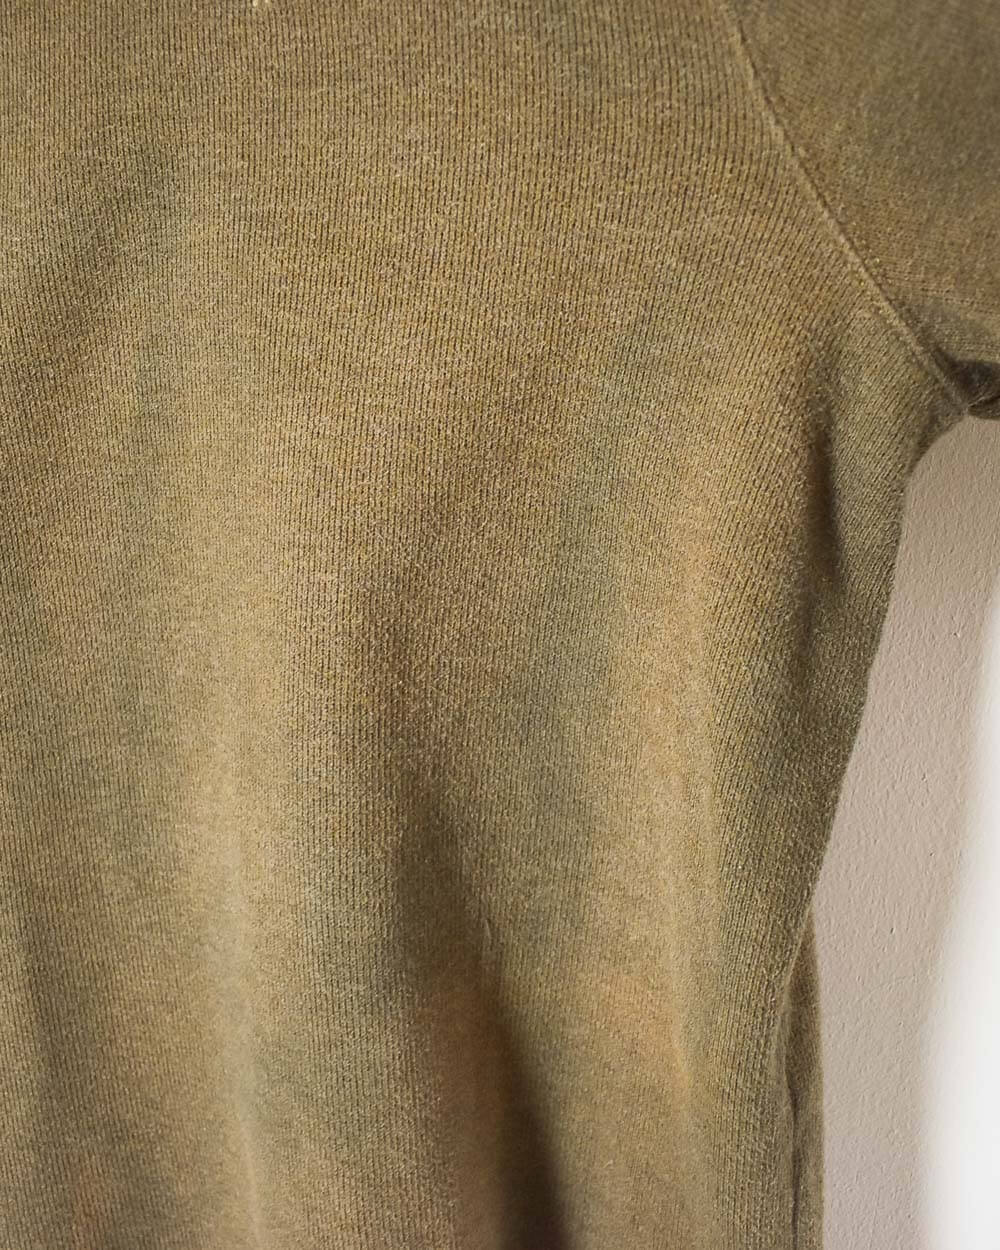 Brown Ralph Lauren 1/4 Zip Sweatshirt - X-Large